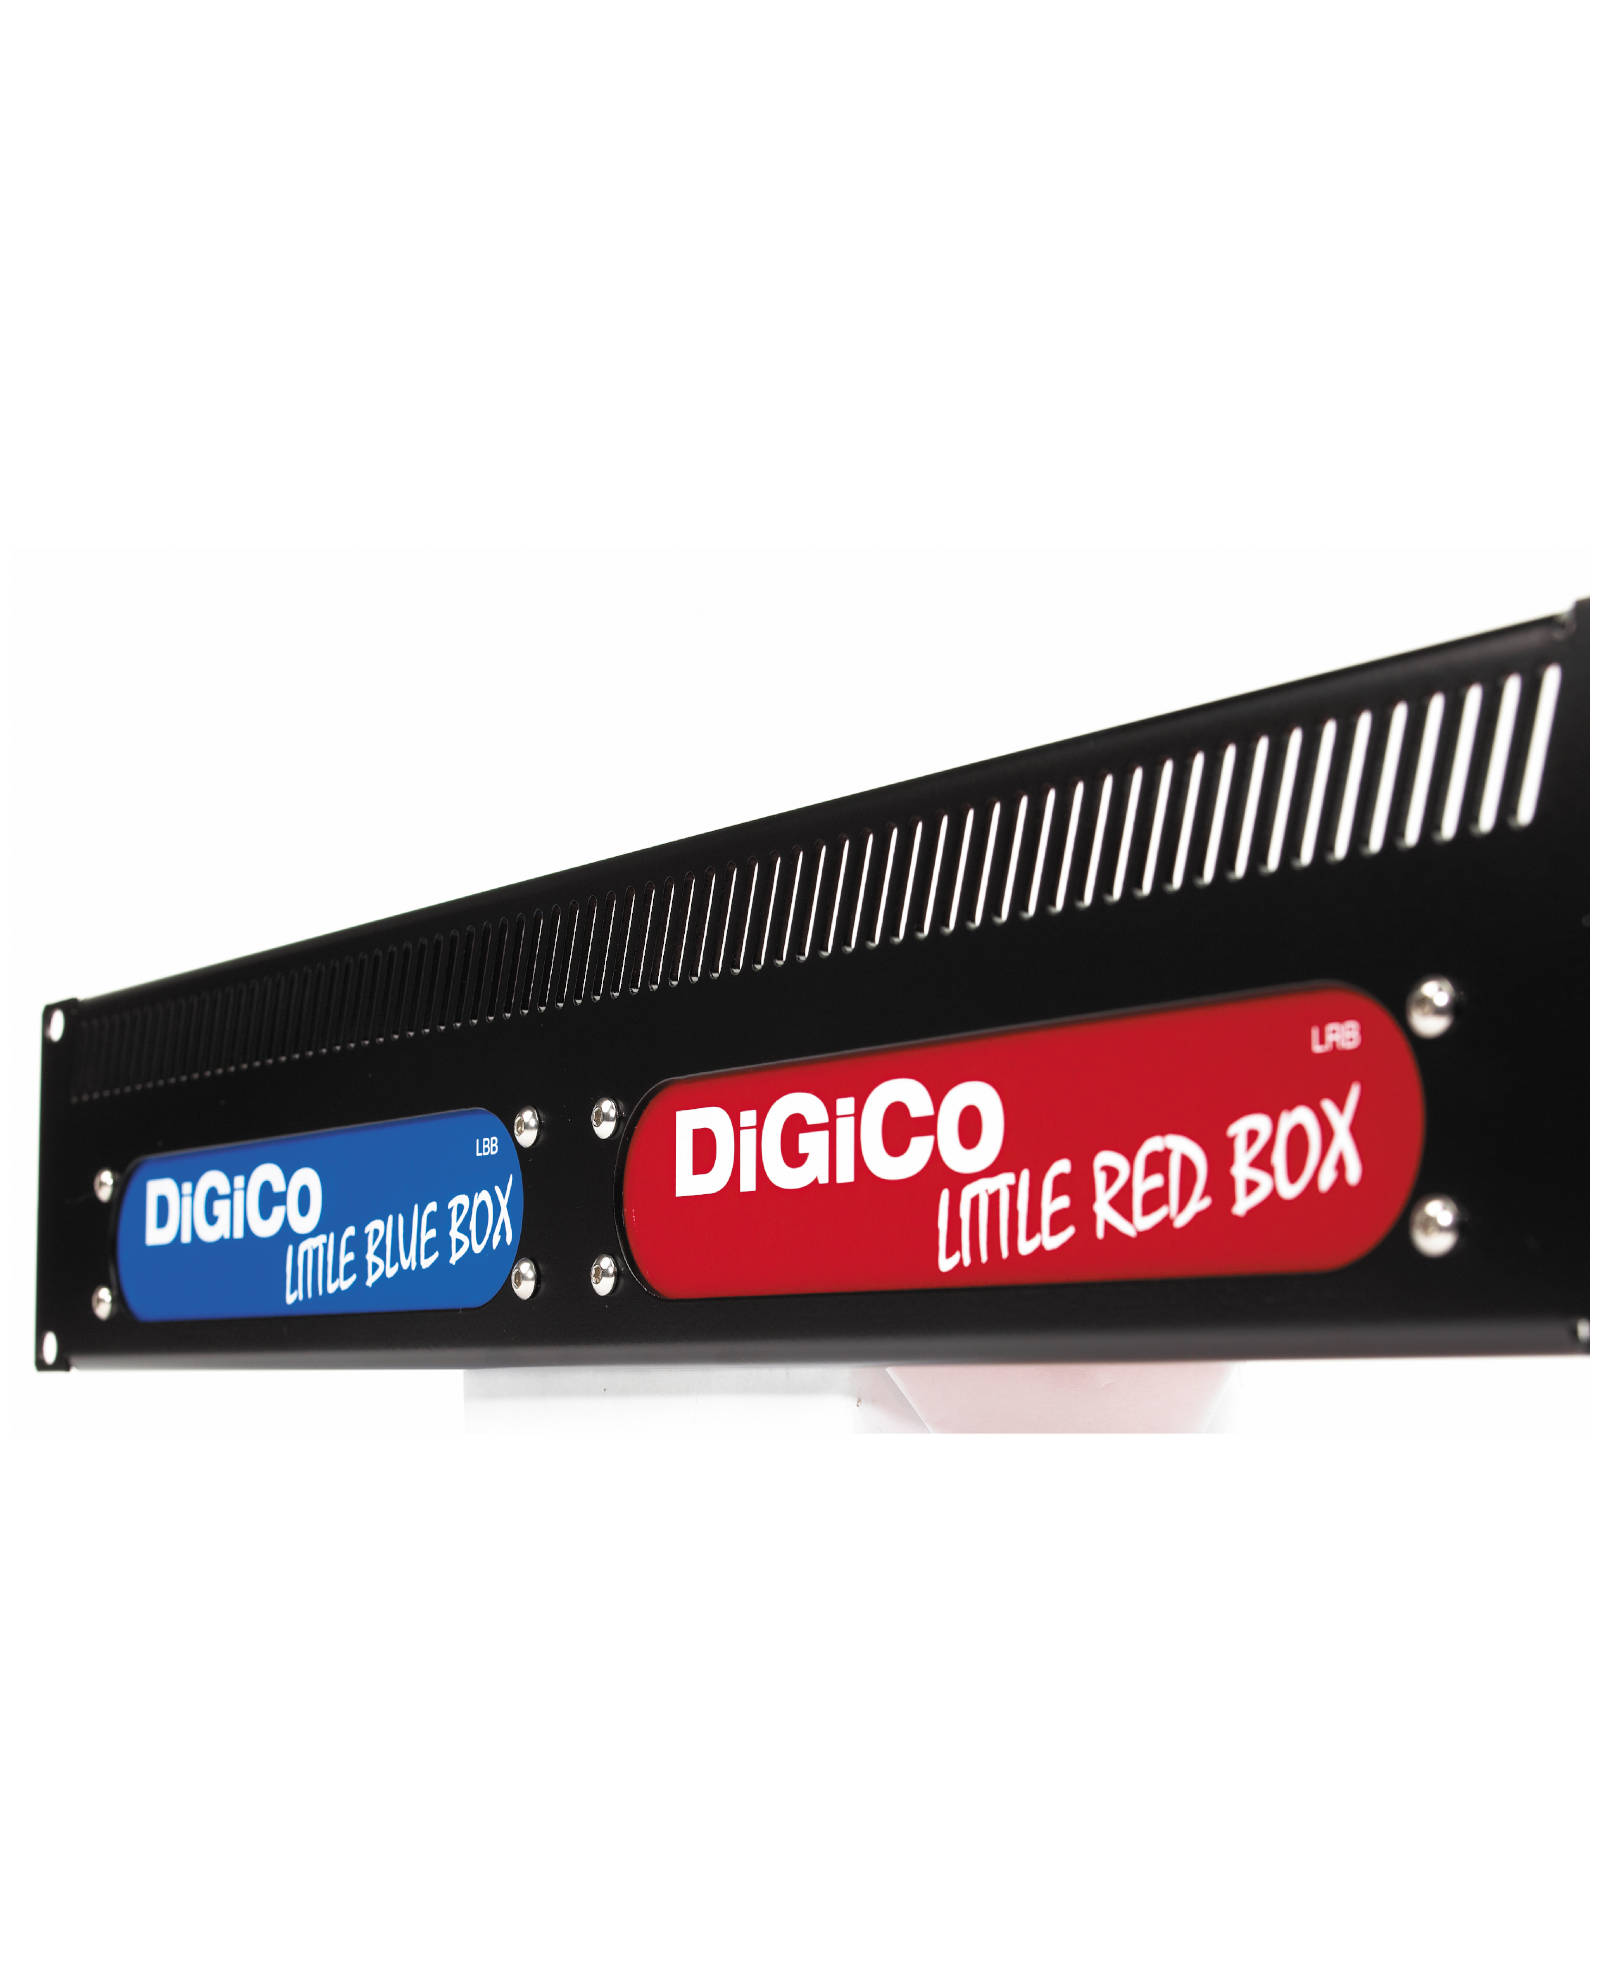 Digico Little Red Box1 (3)